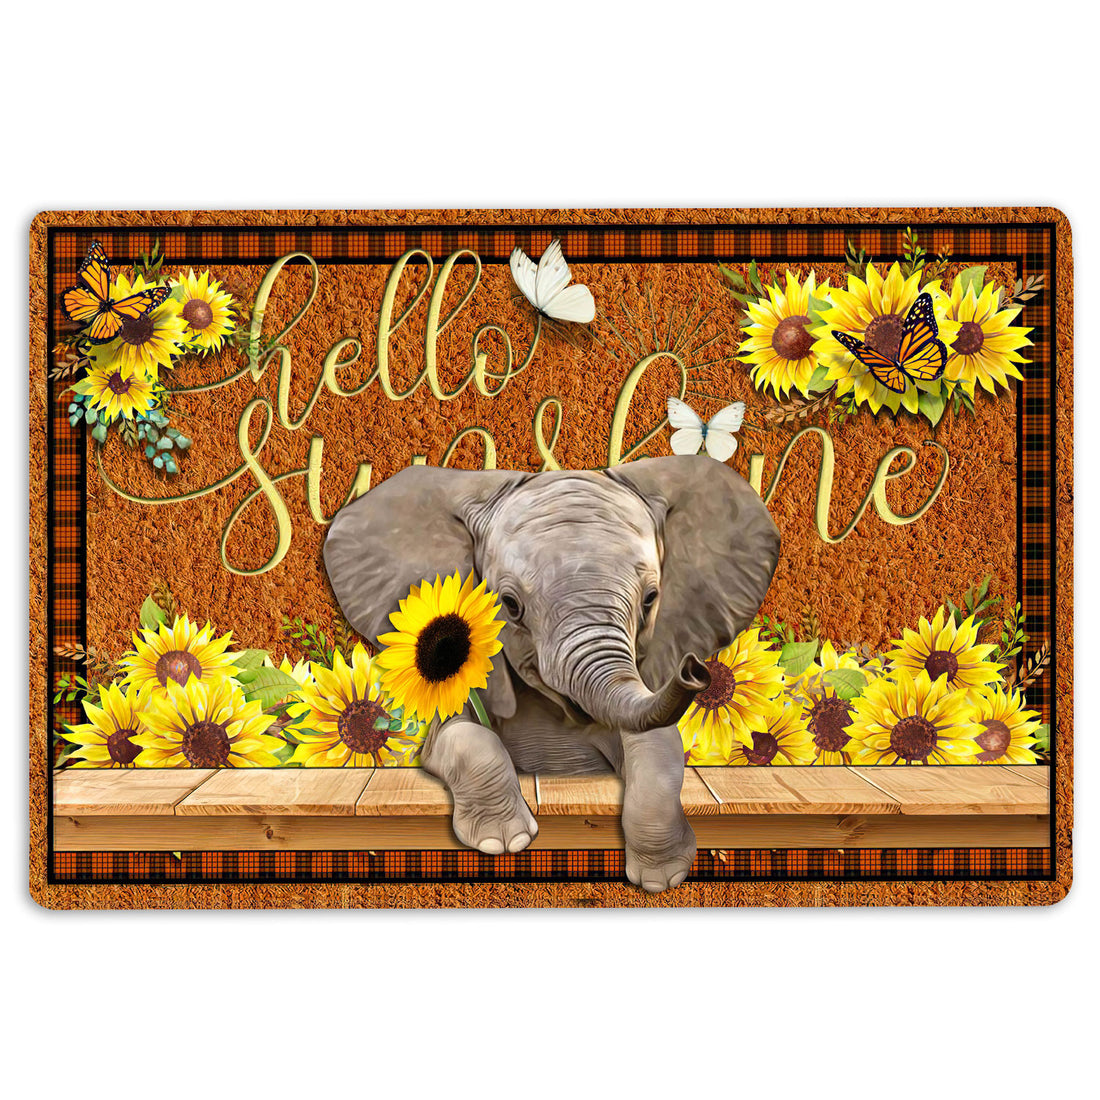 Ohaprints-Doormat-Outdoor-Indoor-Elephant-Hello-Sunflower-Butterfly-Rubber-Door-Mat-1790-18'' x 30''